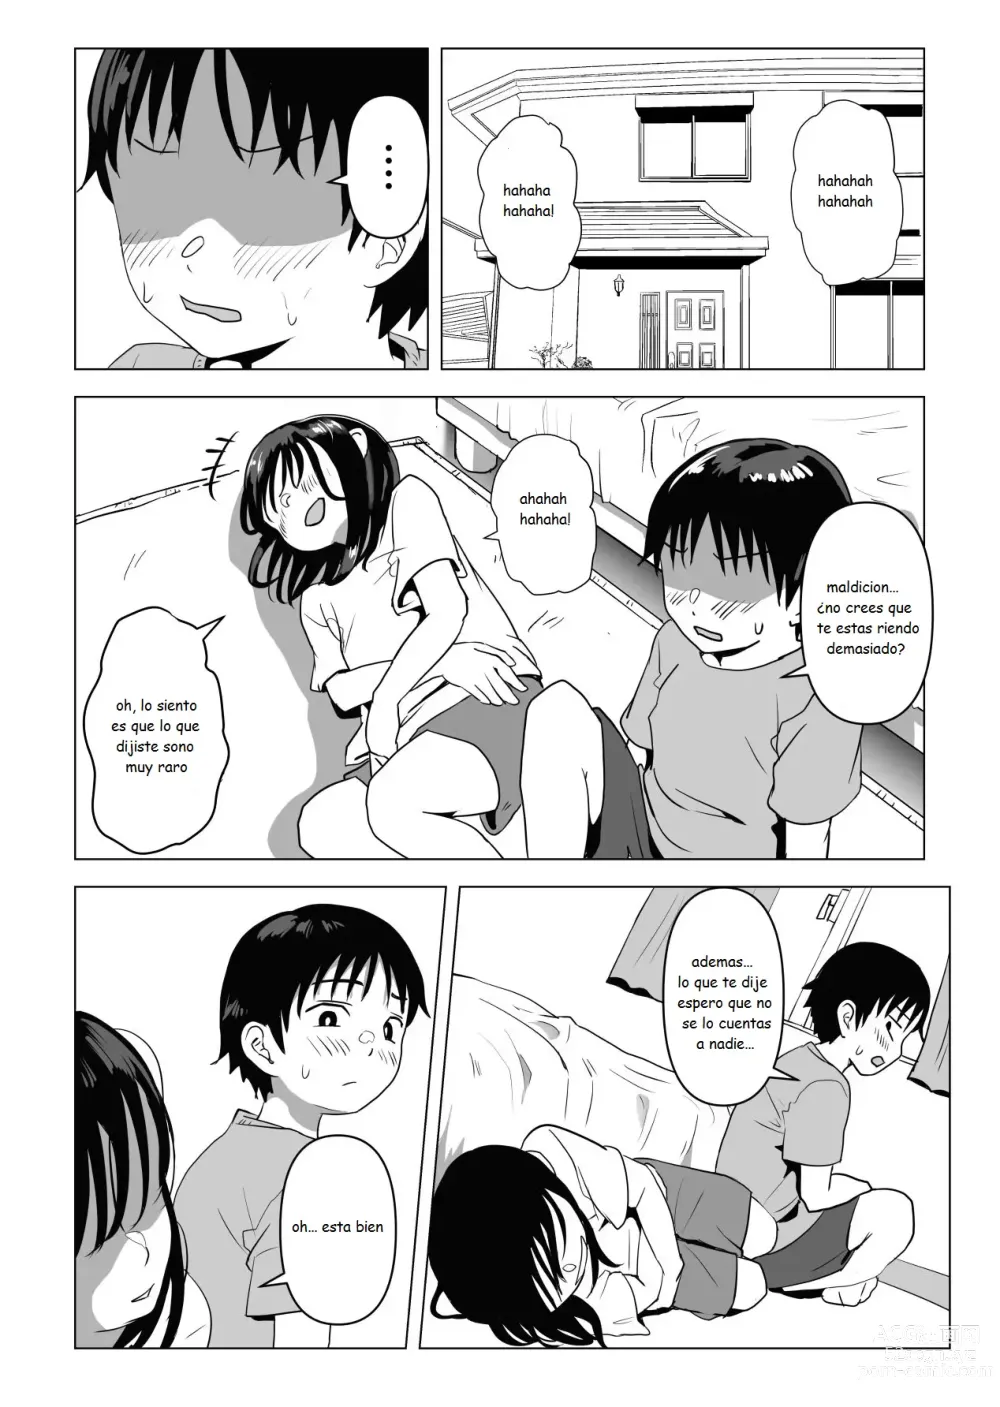 Page 9 of doujinshi Mi amiga de la infancia de grandes pechos y mi hermano se han estado conportado raro ultimamente